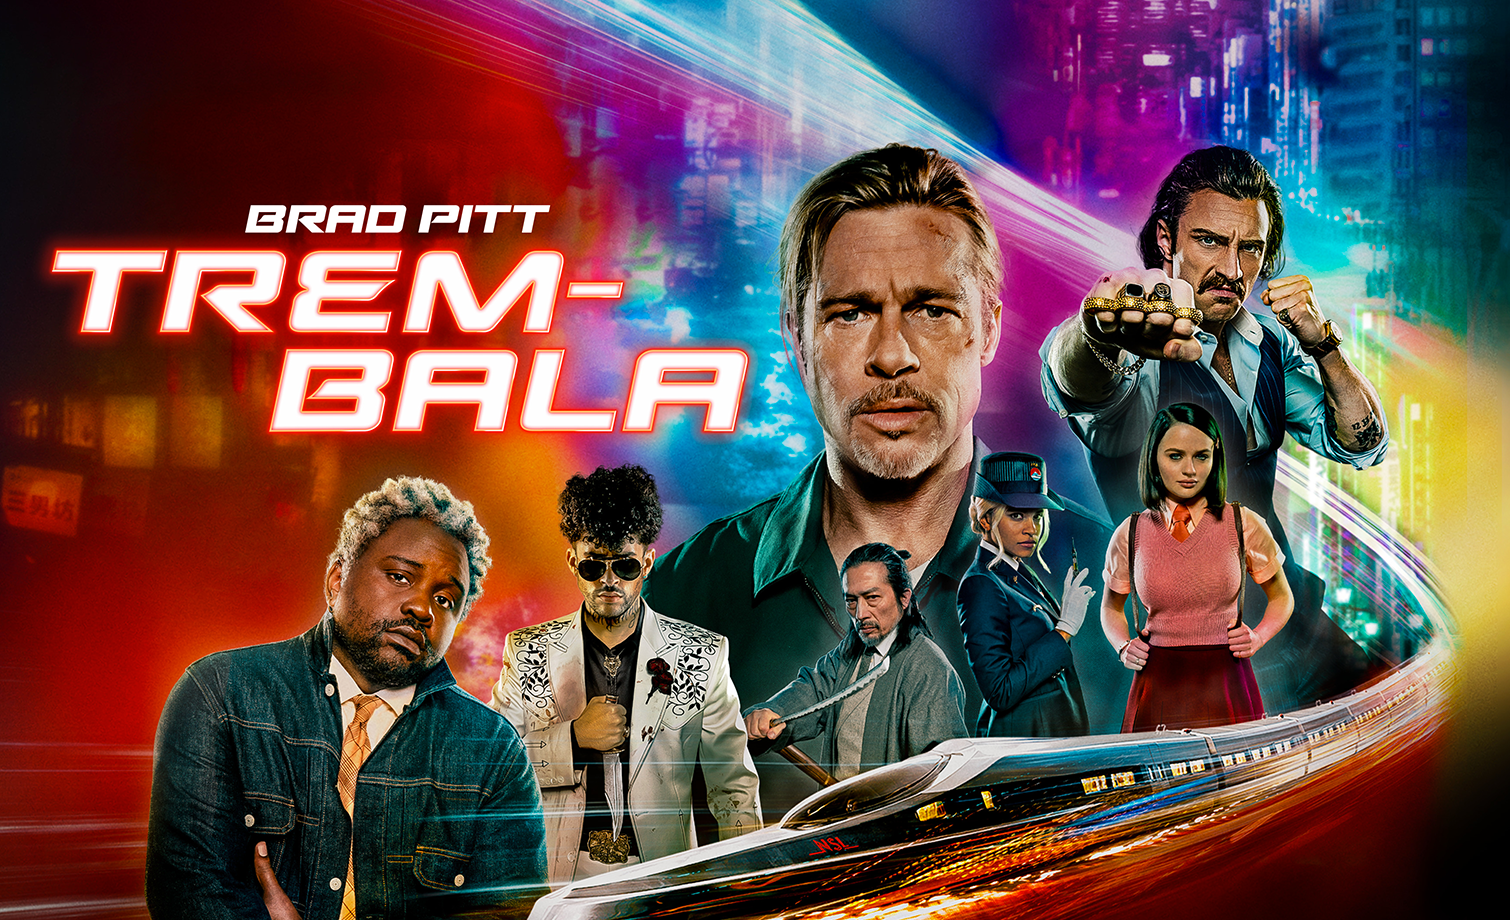 Trem-Bala': Novo filme de Brad Pitt foi influenciado pelas